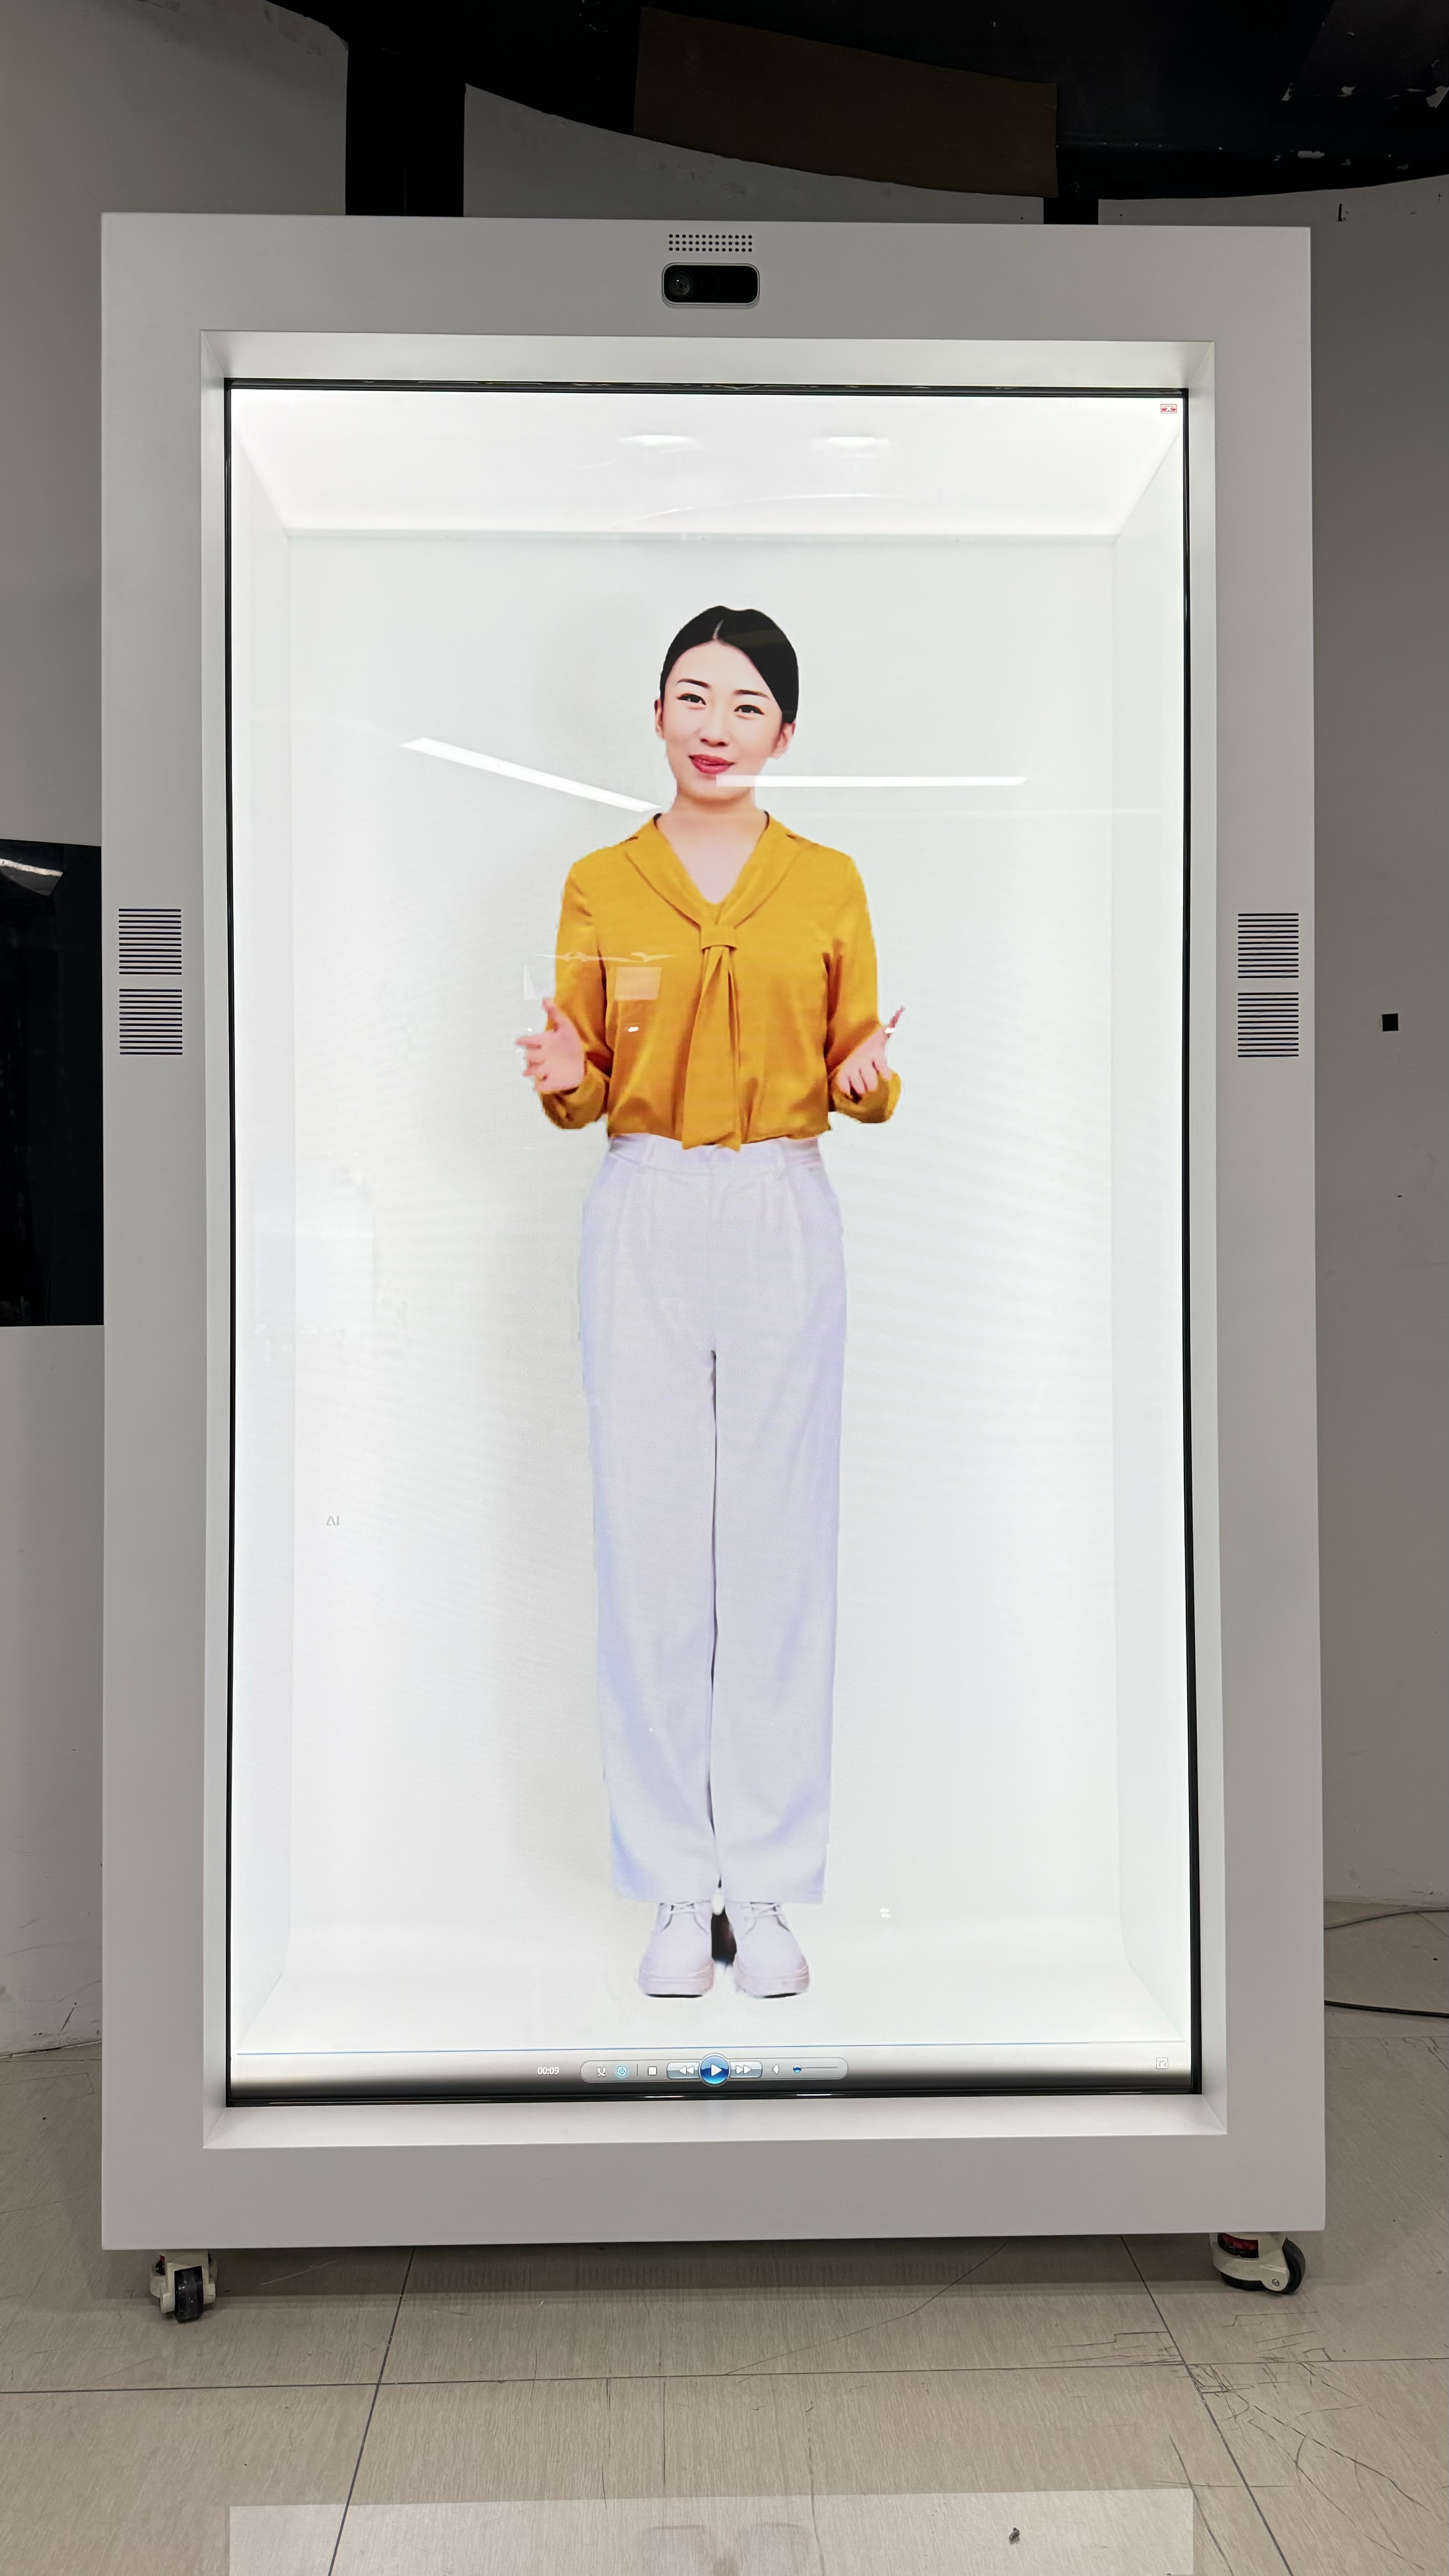  WanGo威斯尼斯人wns2299cn 86英寸3D透明屏广告展示远程视频直播数字虚拟人全息舱柜 前开门铁 带触摸 11代I5/4G+526G